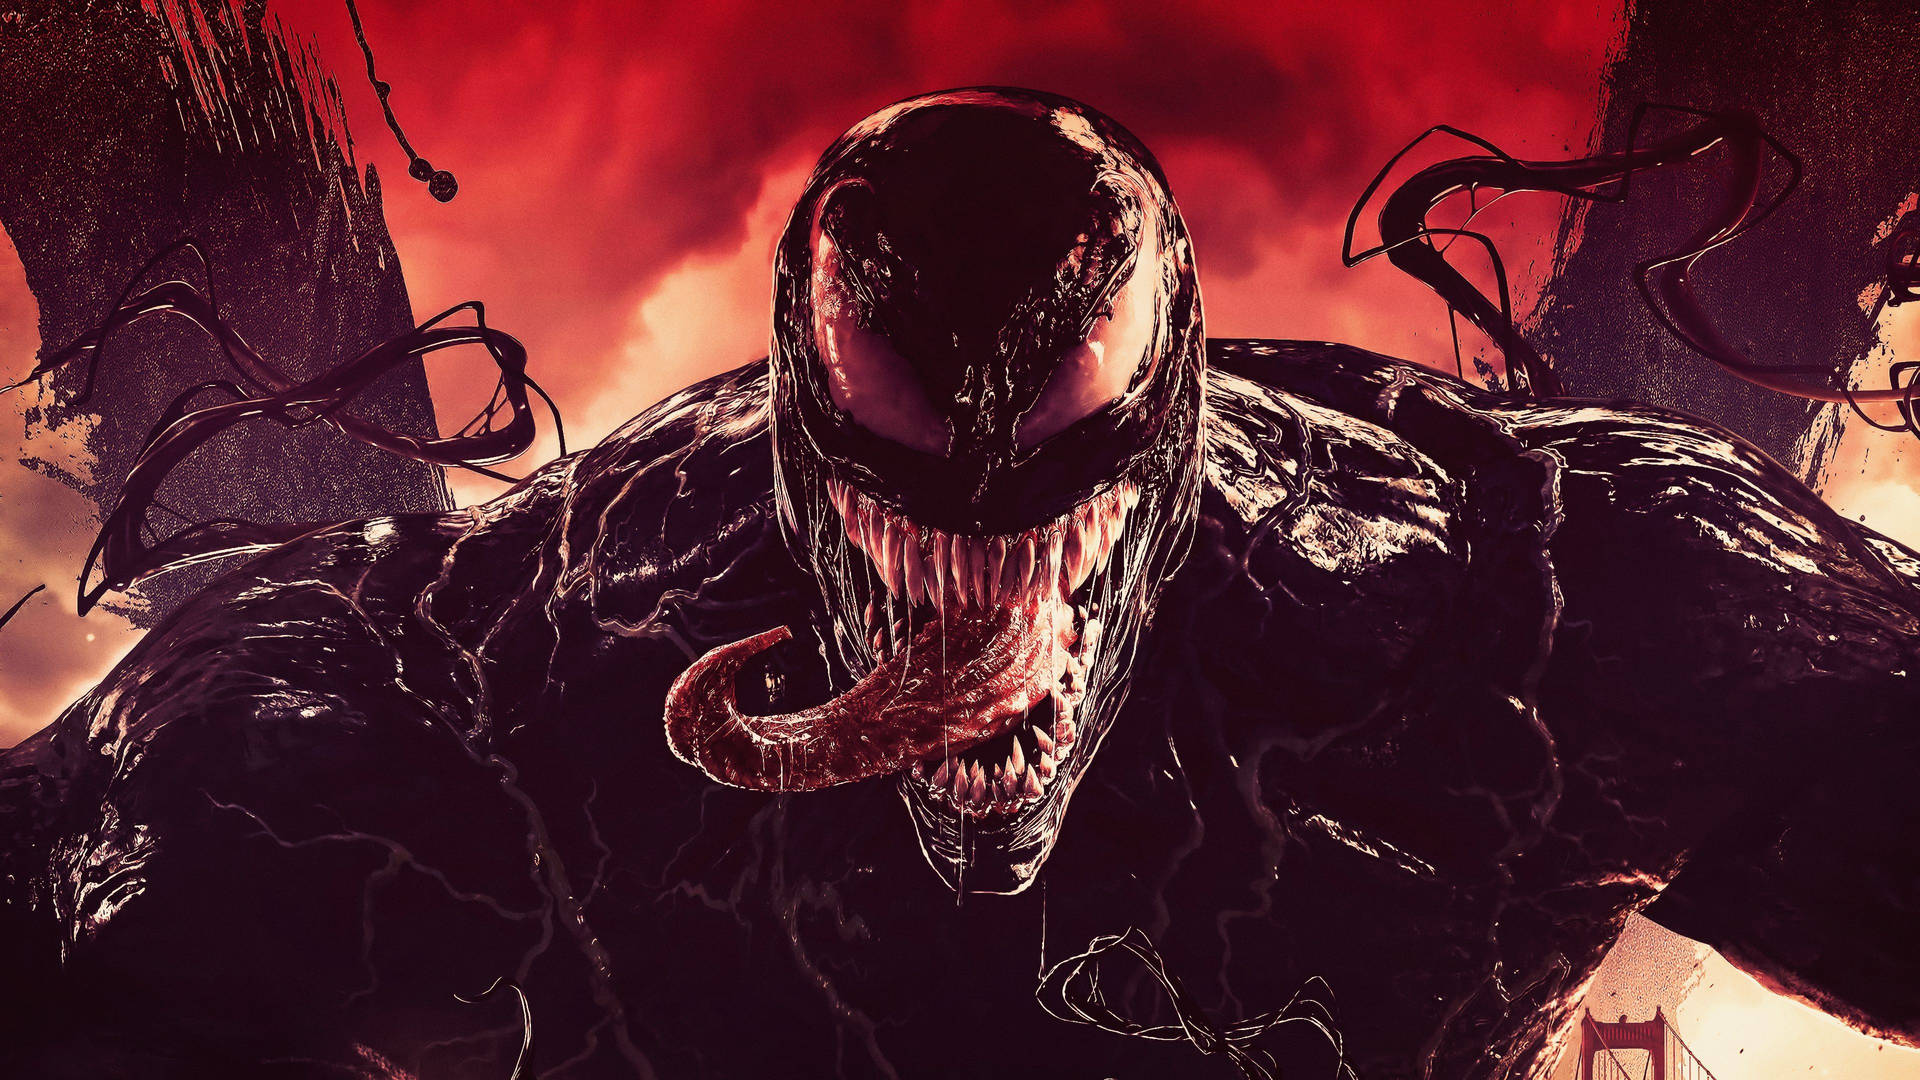 Carnage Och Venom Bildar En Allians På Min Dator- Eller Mobilbakgrund. Wallpaper